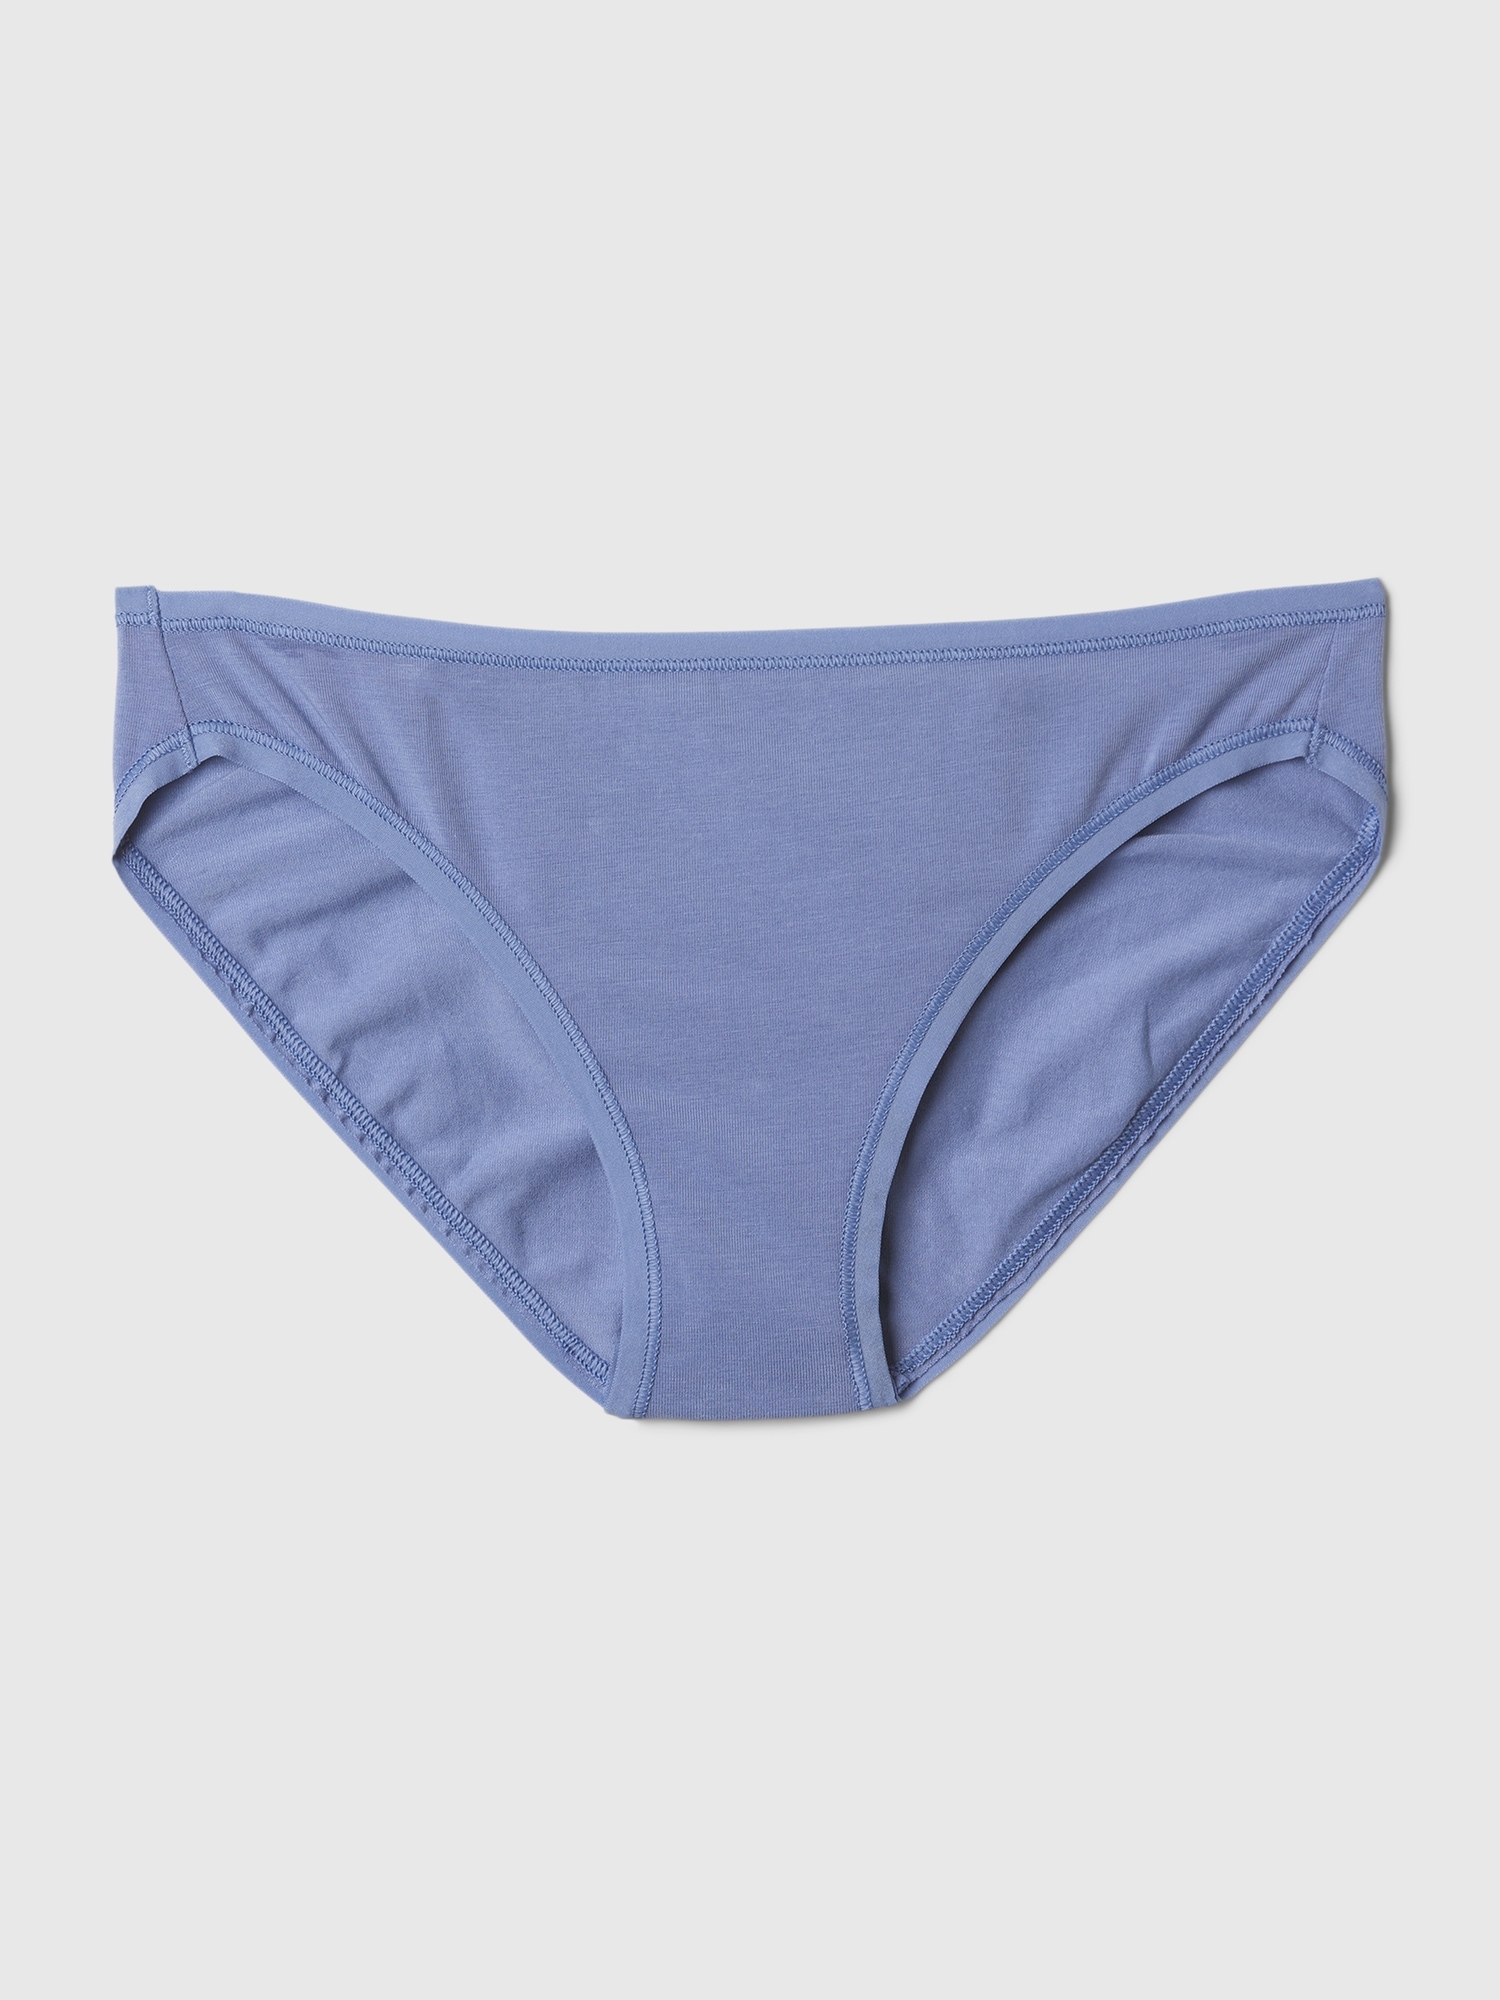 Gap Organic Stretch Cotton Bikini In Larkspur Blue